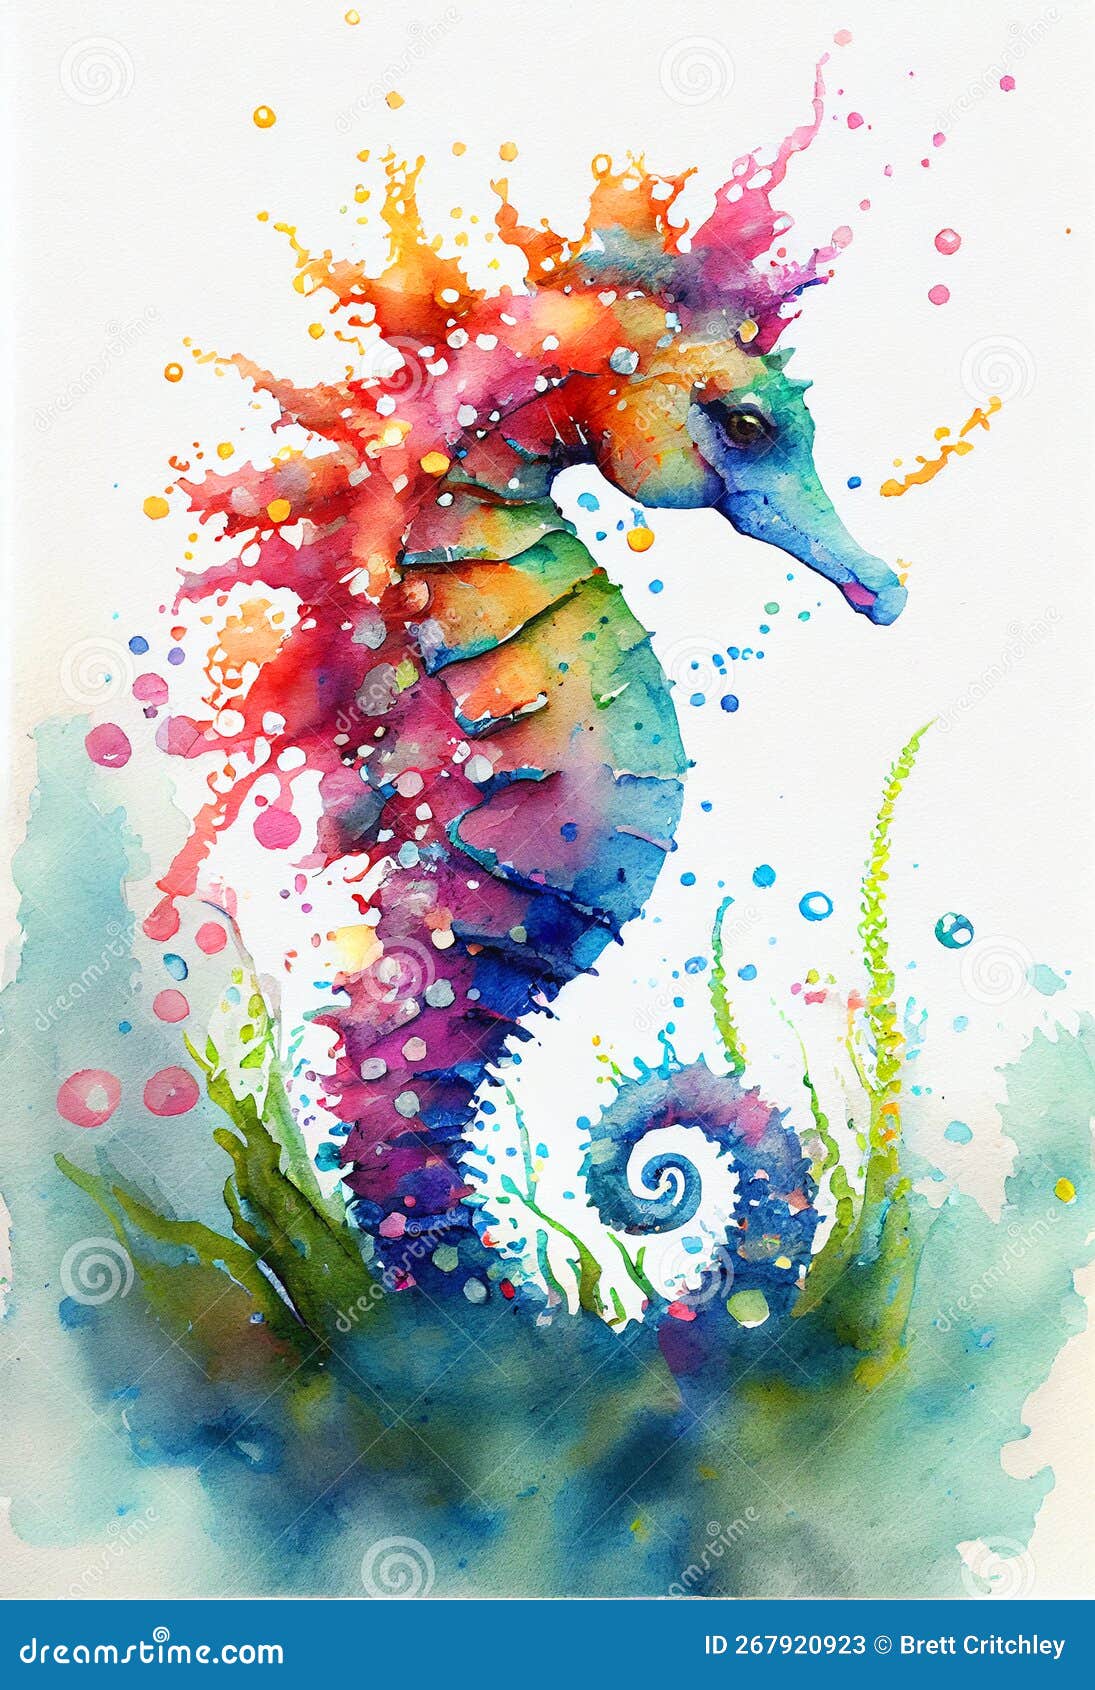 Desenho de Cavalo marinho pintado e colorido por Usuário não